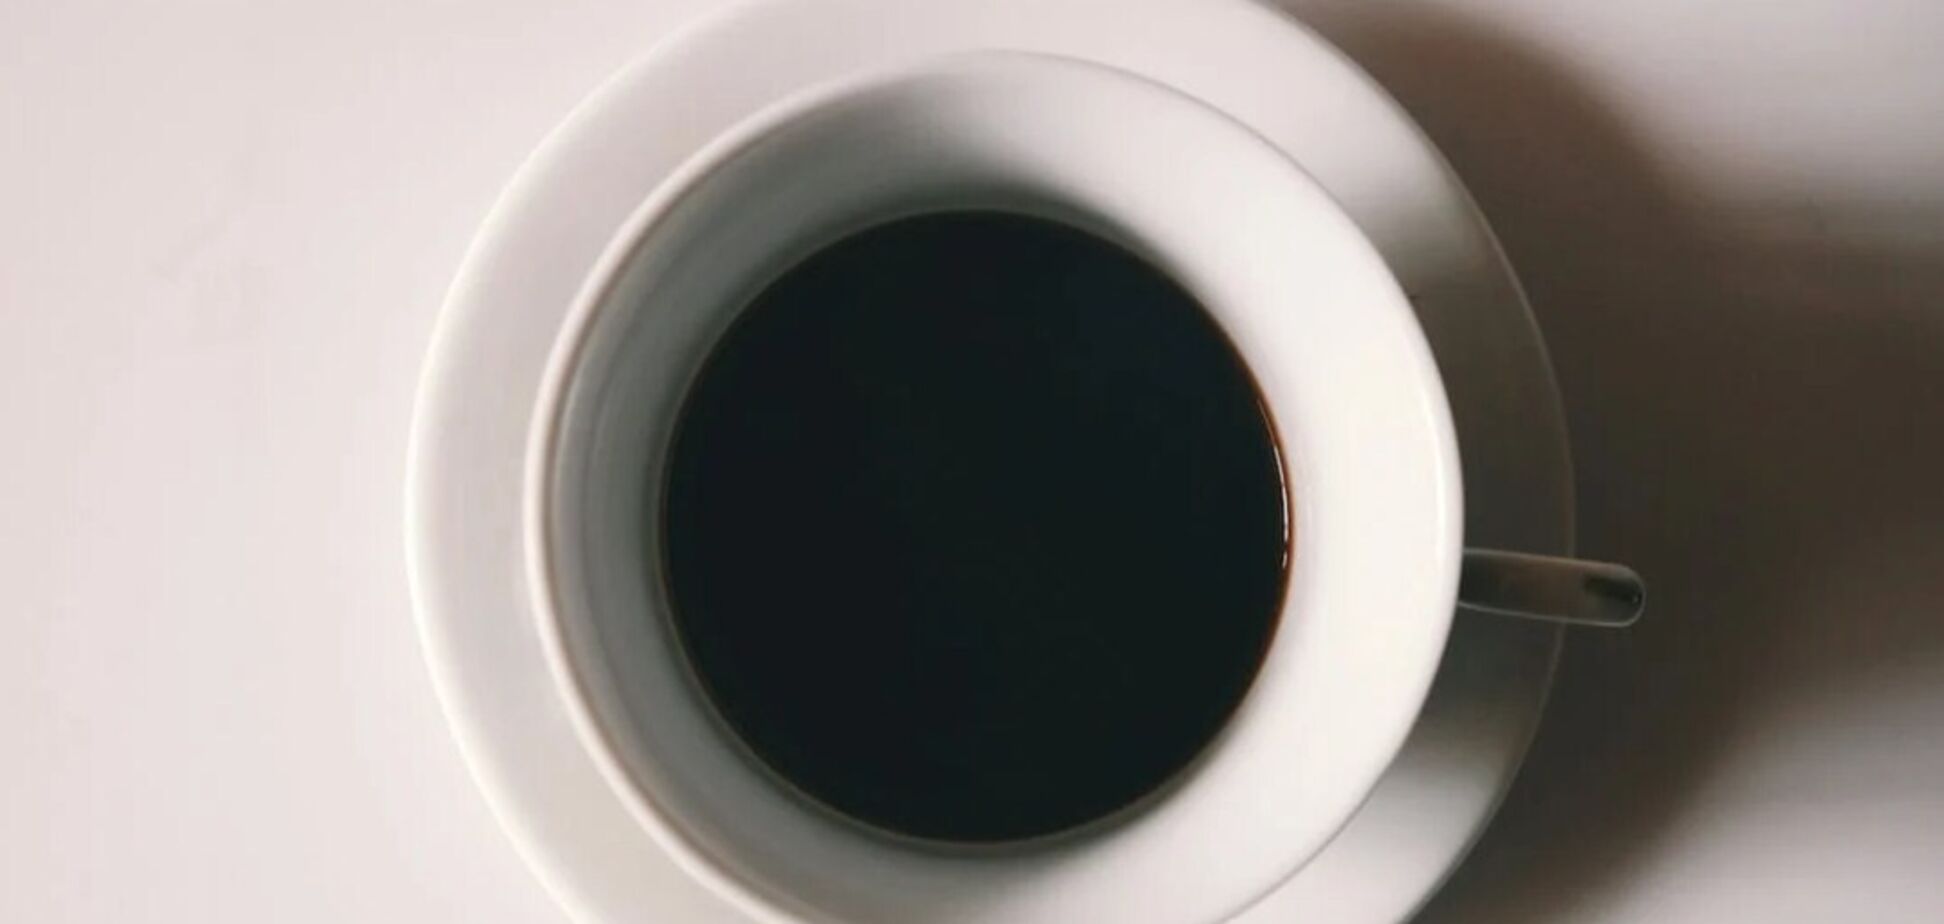 Не буде кислою та гіркою: що додати до кави, щоб вона була ще смачнішою